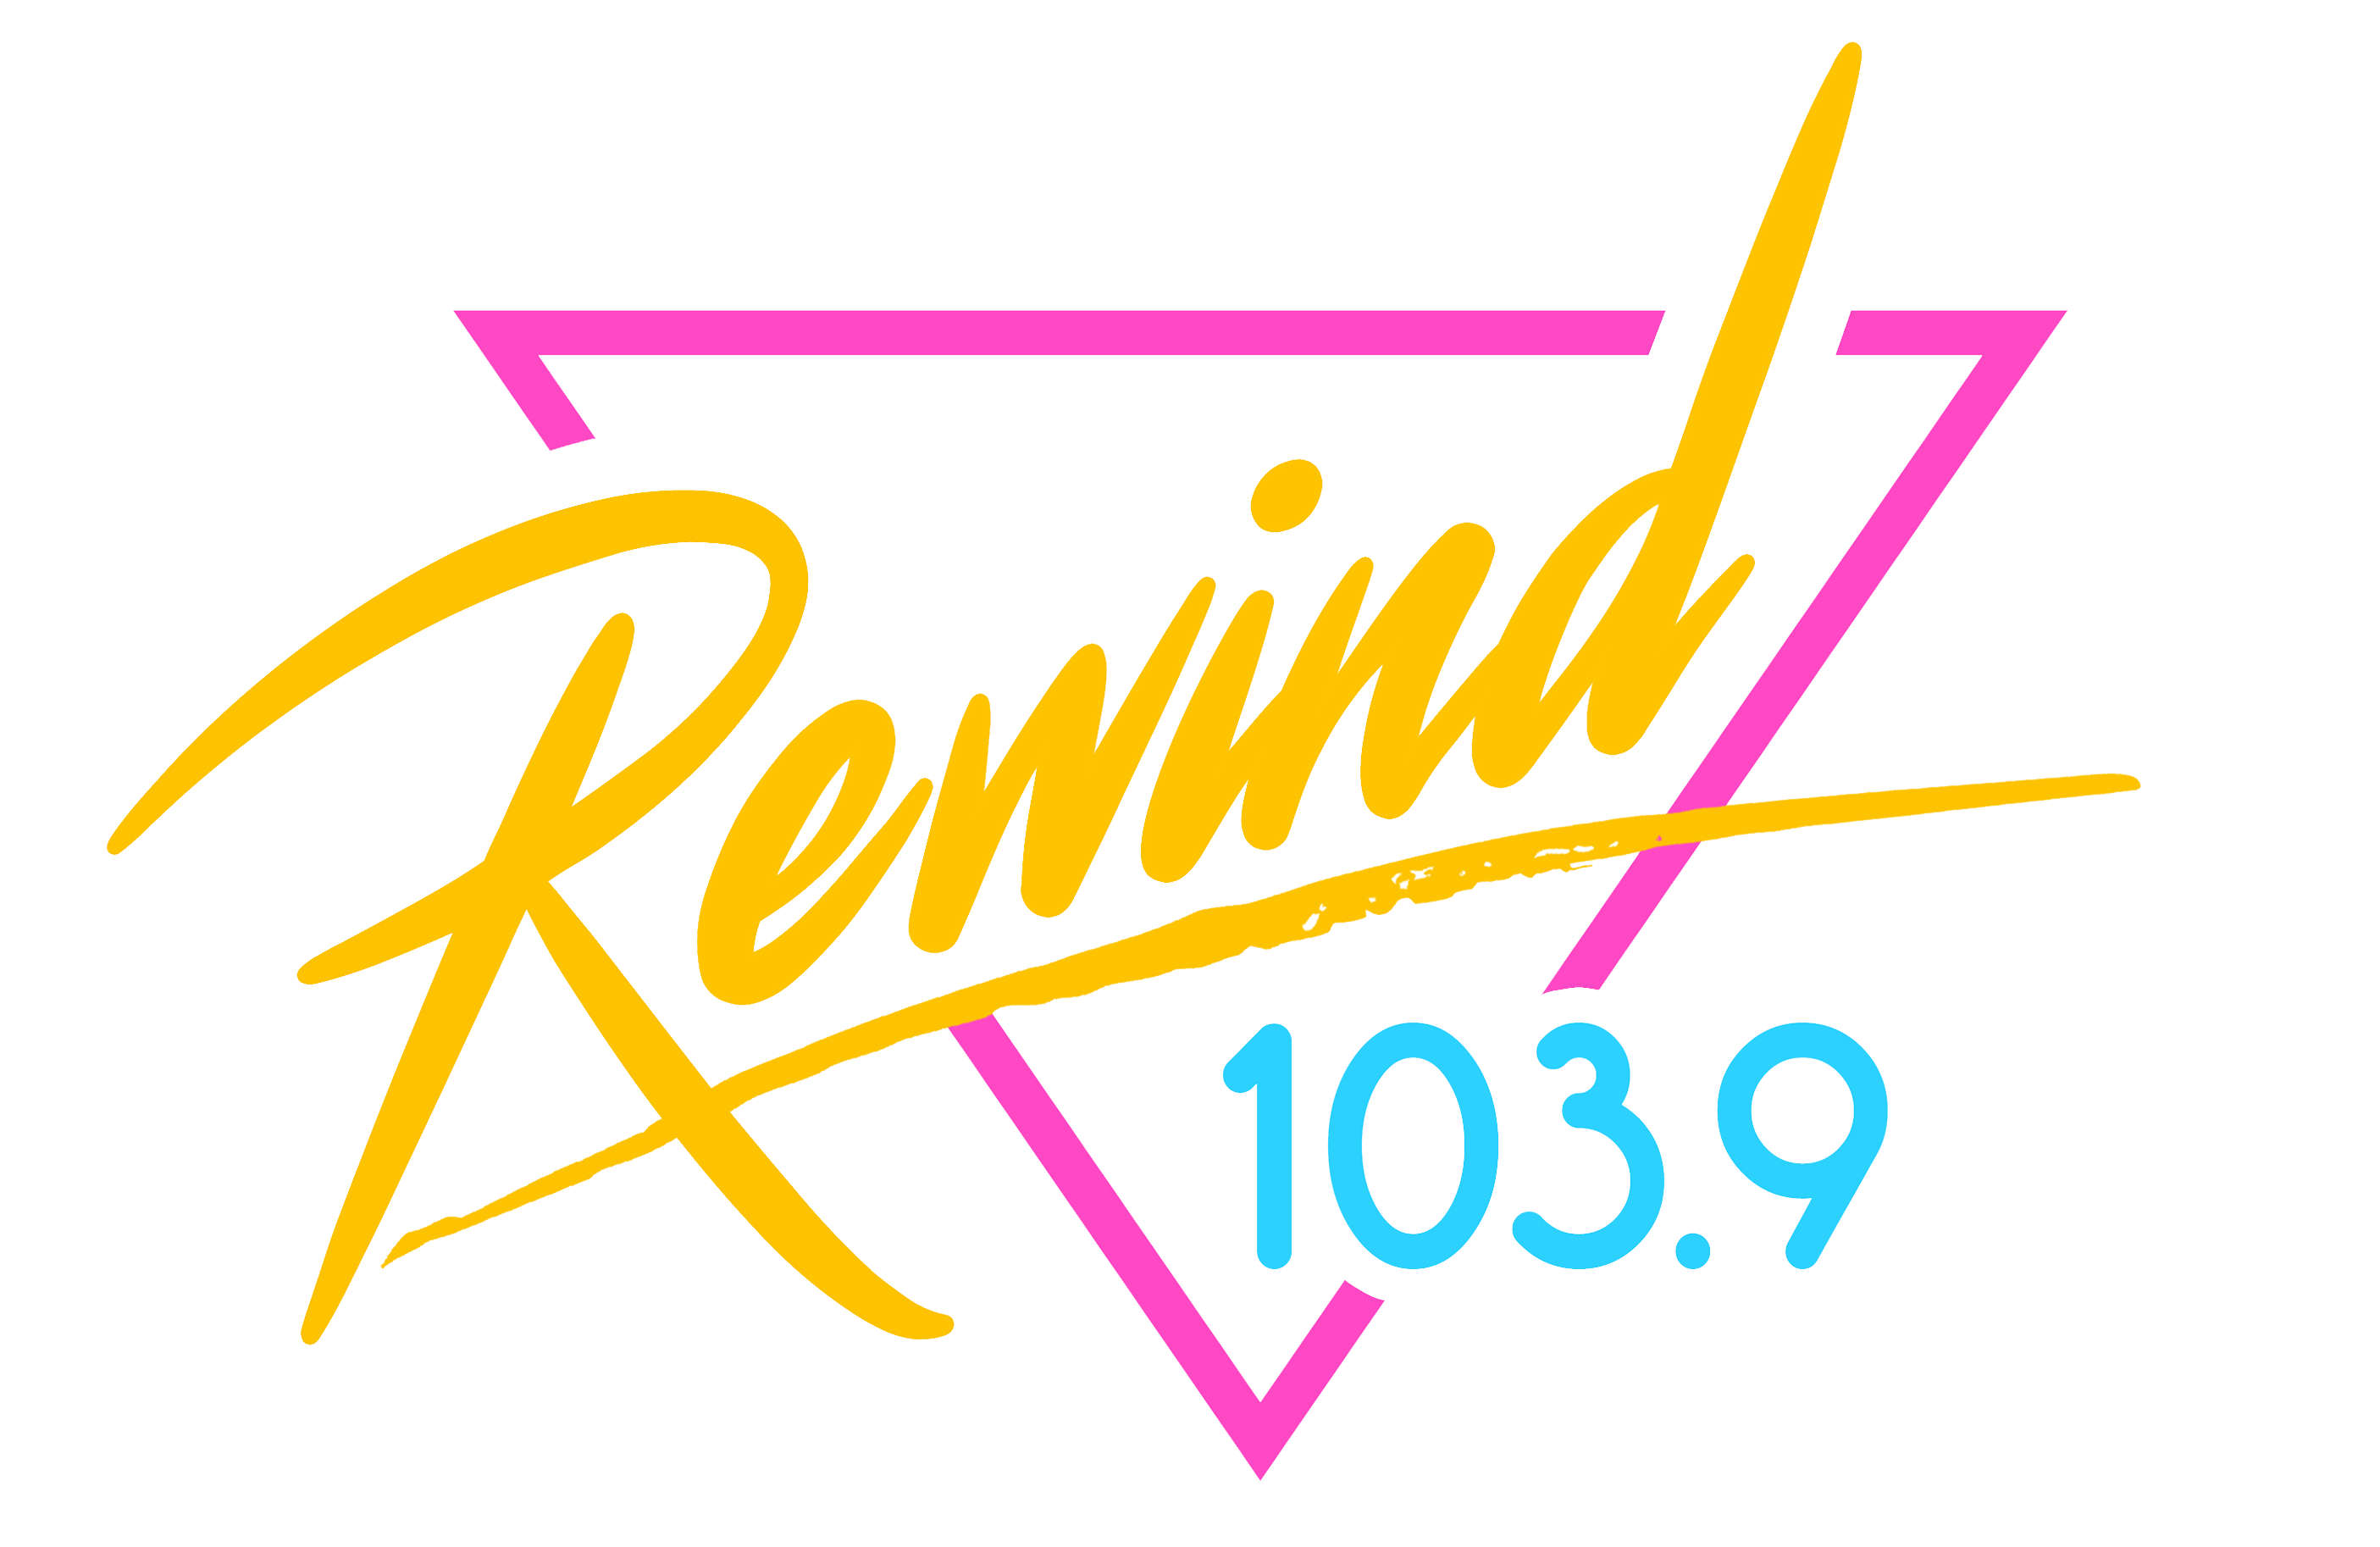 Rewind 103.9 - Listen Live